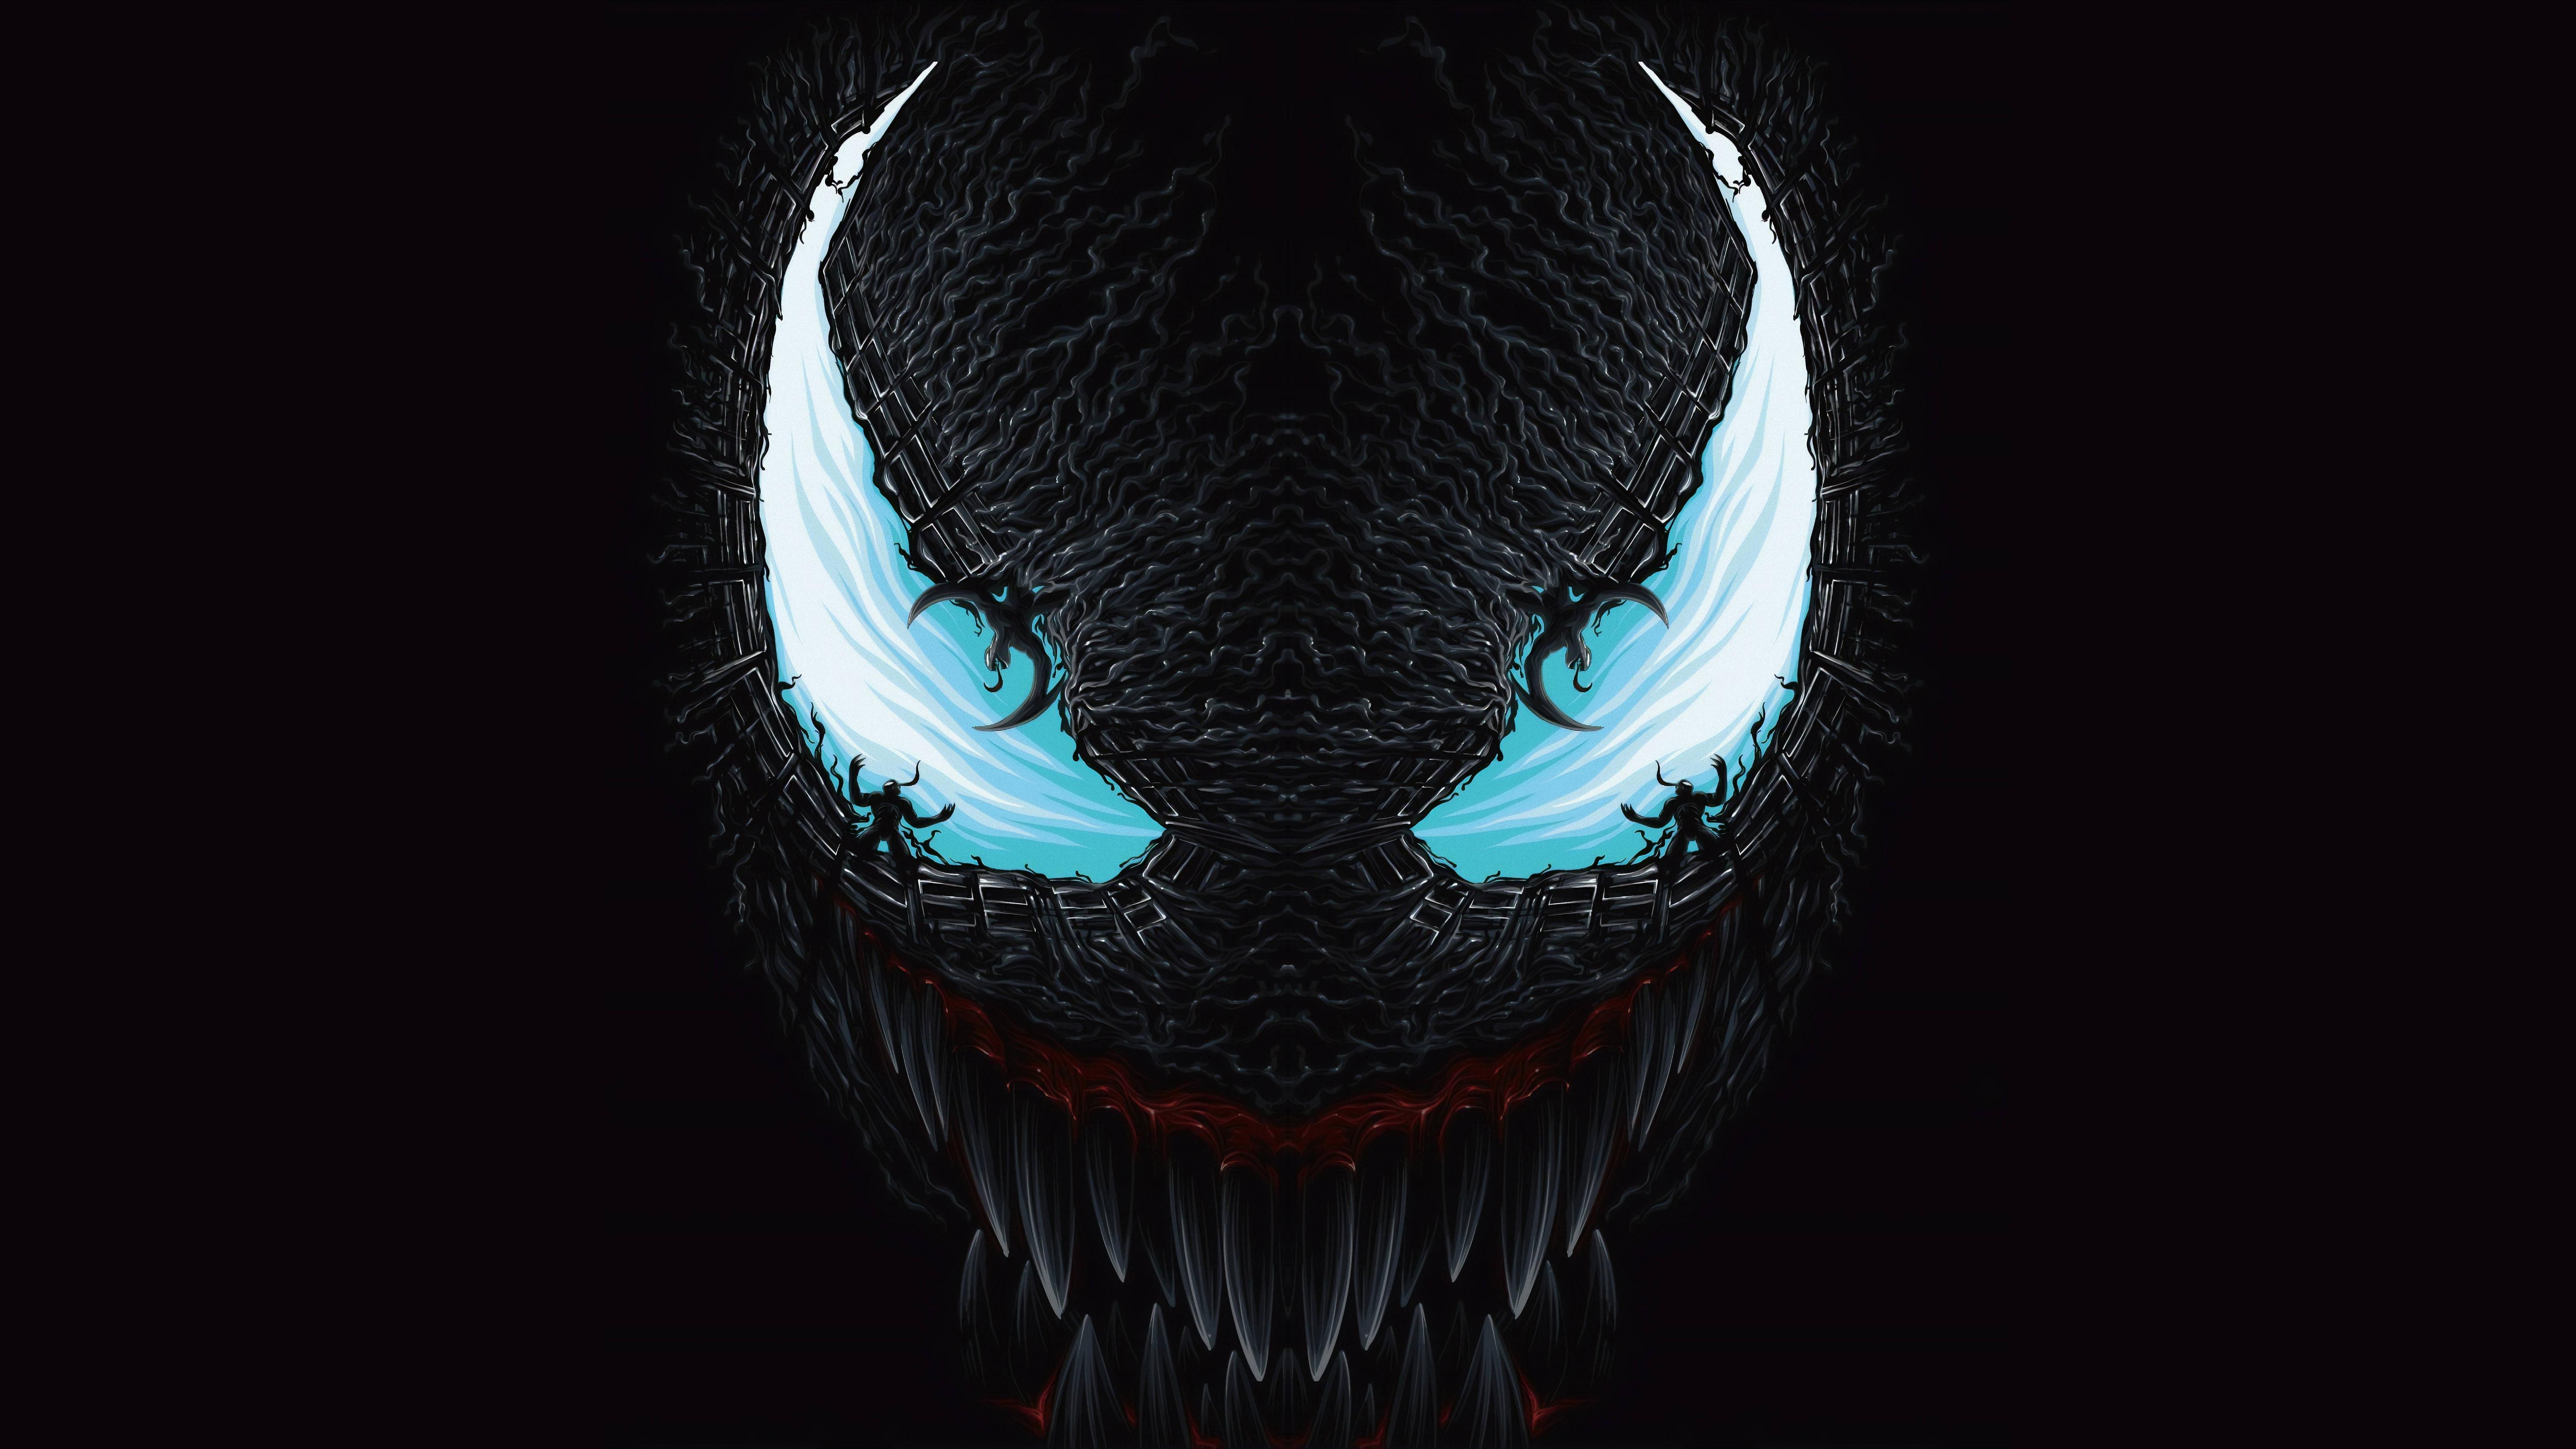 Venom wallpaper by SthaArpit  Download on ZEDGE  2d3d